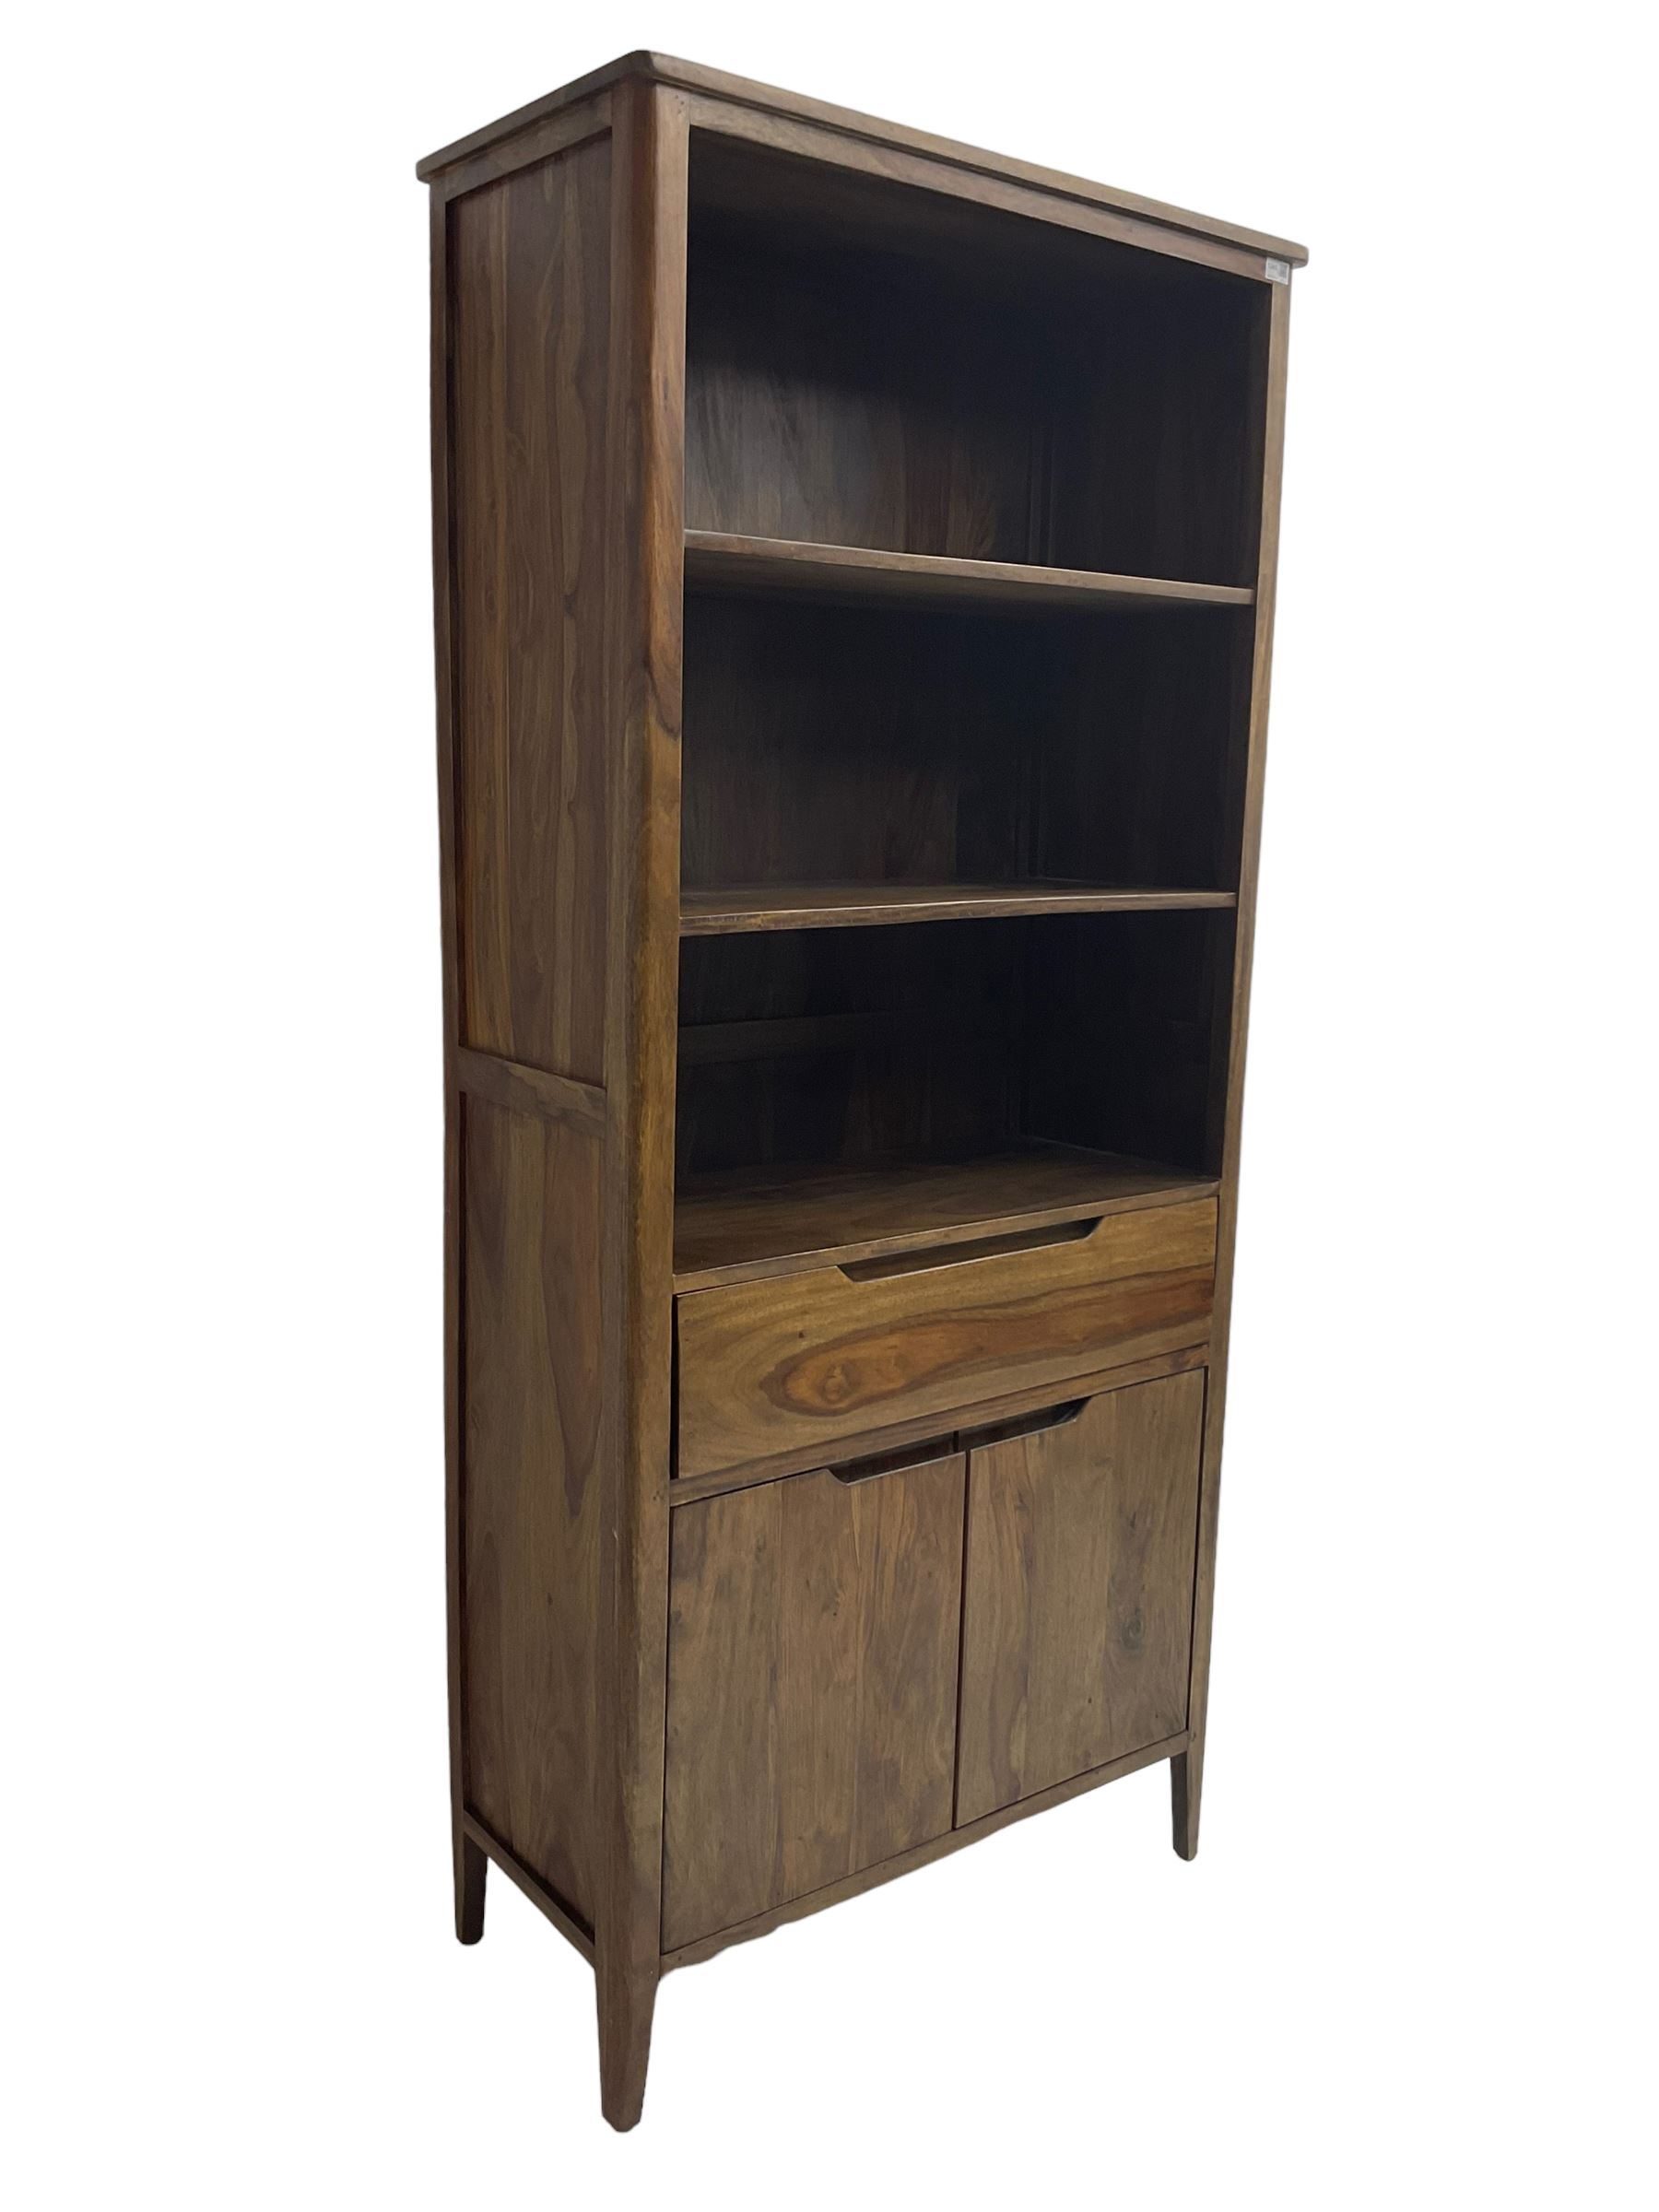 Hardwood bookcase - Image 3 of 6